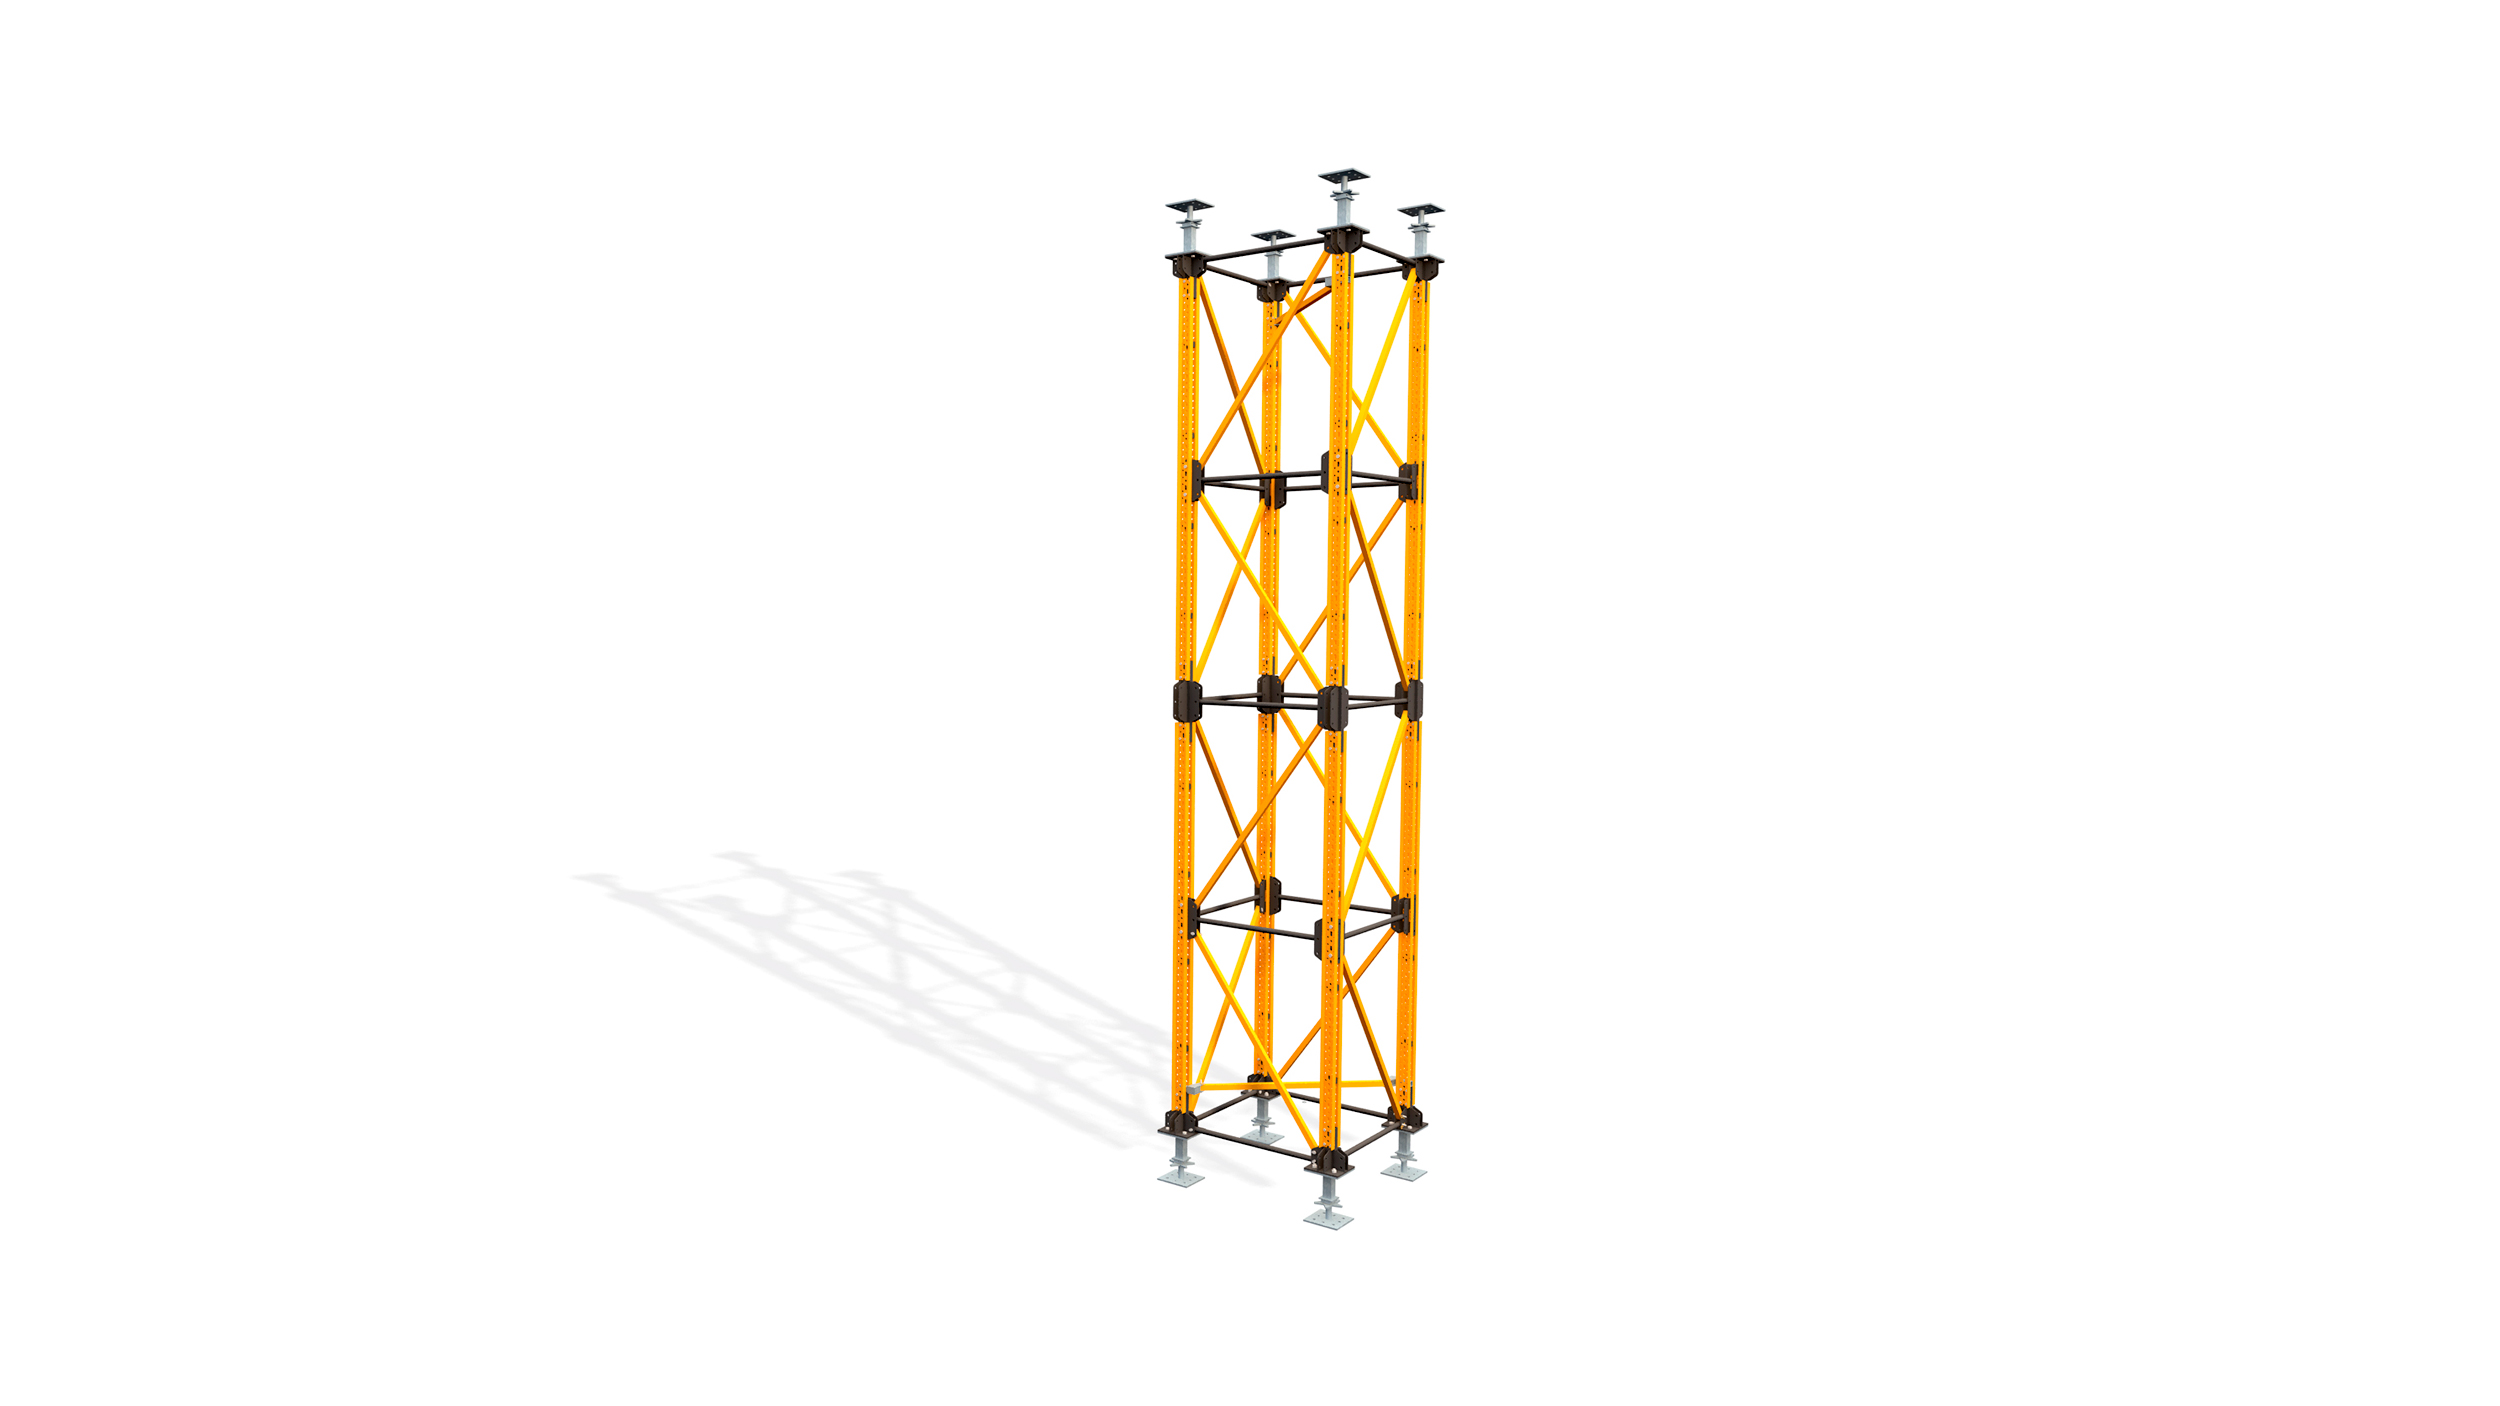 Ciężka wieża podporowa znajdująca zastosowanie w budownictwie inżynieryjnym. Niewielka liczba elementów,  szeroki  zakres konfiguracji, prosty i bezpieczny montaż na budowie.